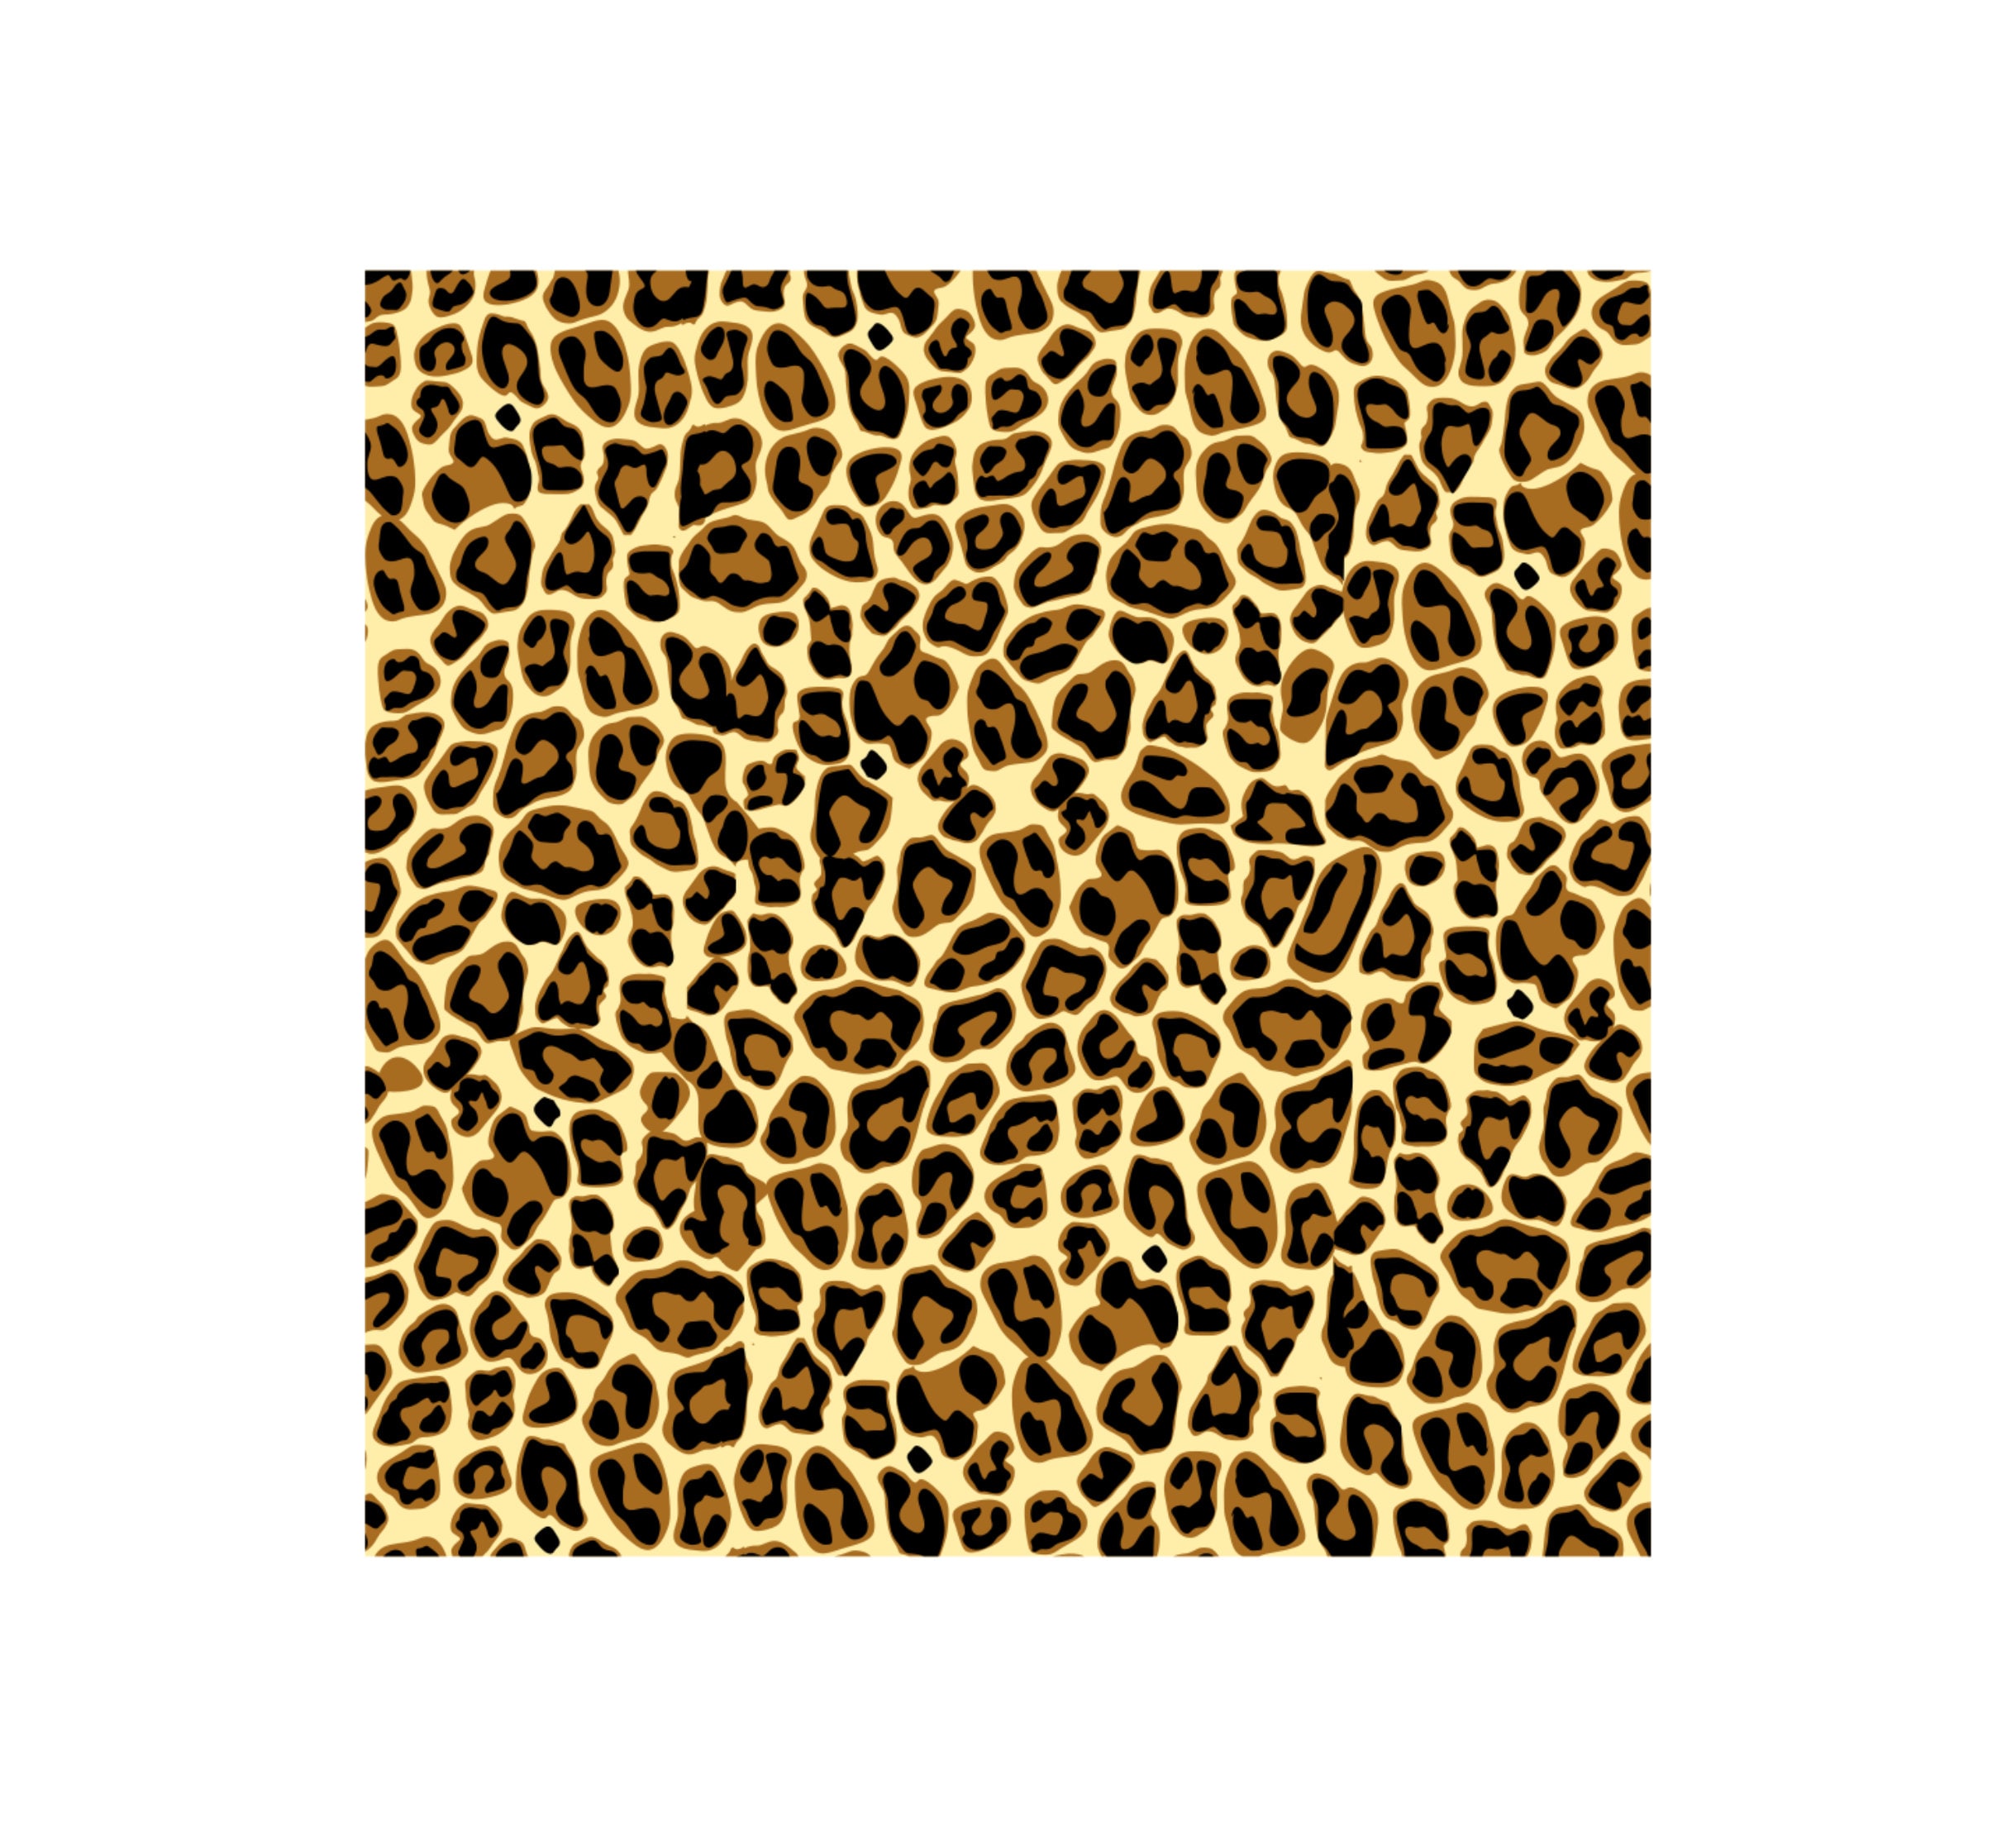 Leopard Skin Light Background là một file SVG với họa tiết da báo rất đẹp và thu hút. Với định dạng này, bạn có thể áp dụng loại họa tiết da báo này vào các thiết kế của mình. Hãy xem các hình ảnh liên quan để cập nhật kiến ​​thức của bạn về leopard pattern SVG.